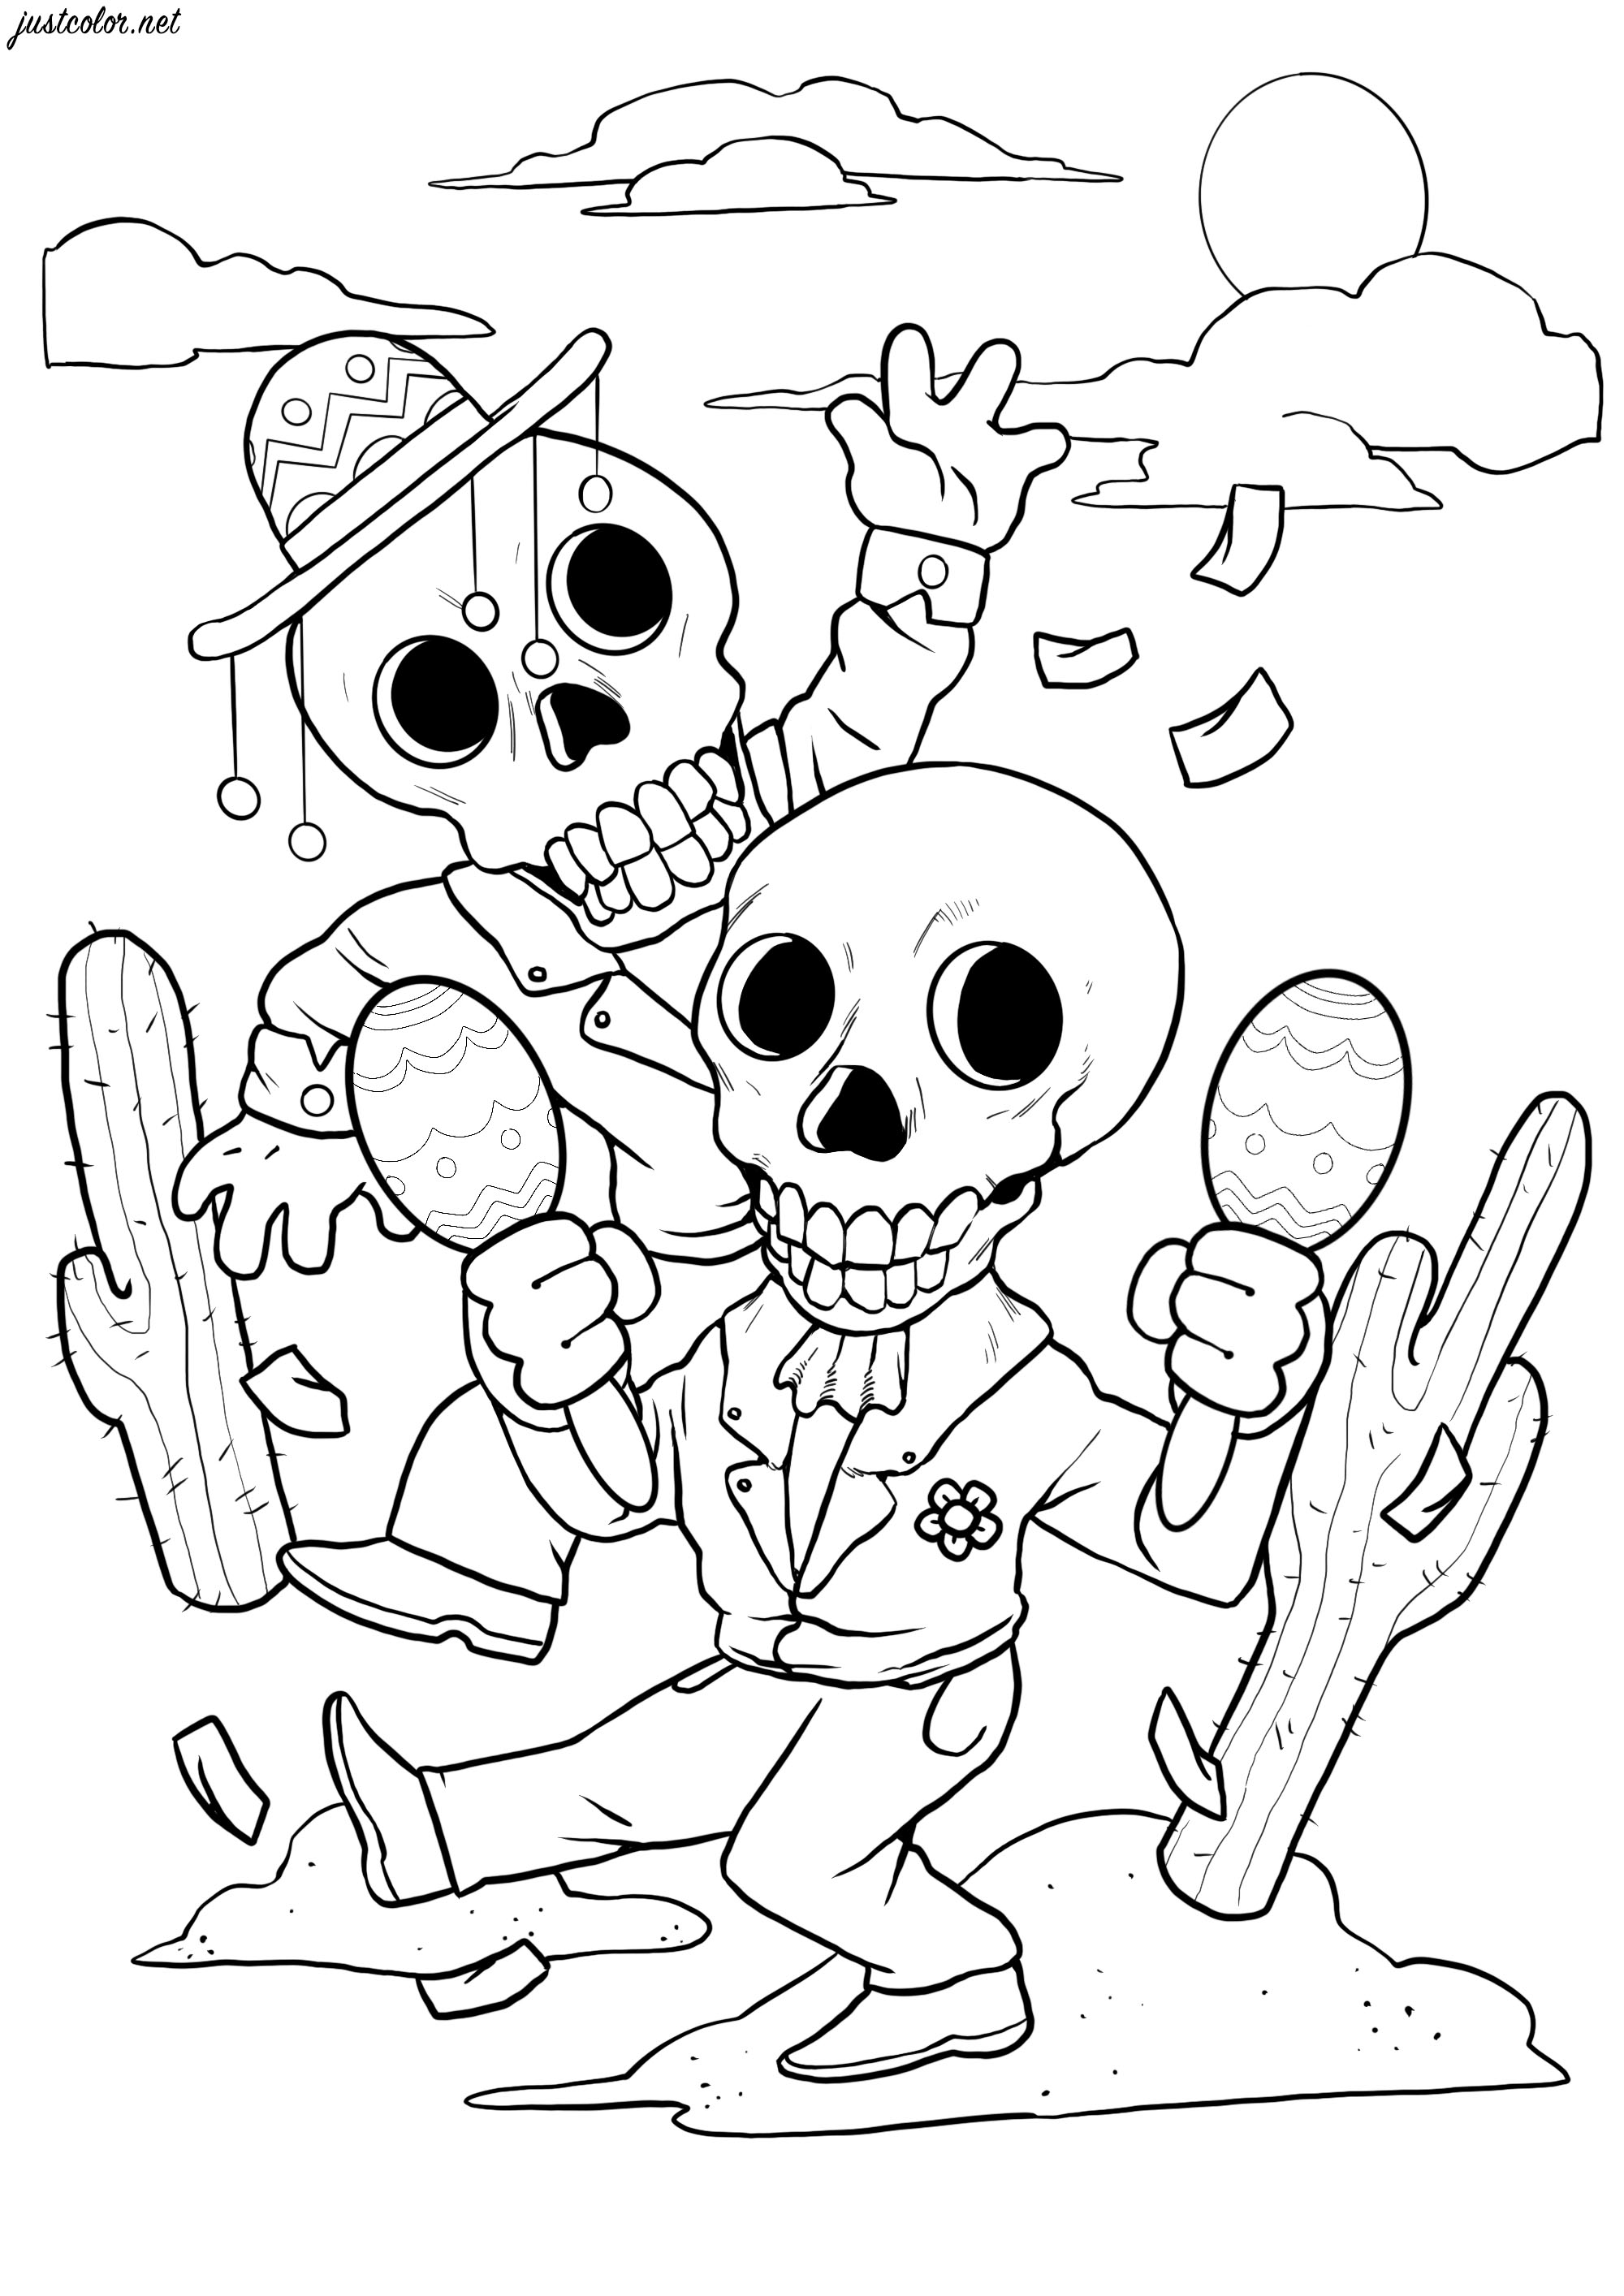 Estes dois esqueletos felizes dançam para o El Día de los Muertos. Coloração muito simples com poucos pormenores, Artista : SPZ artworks